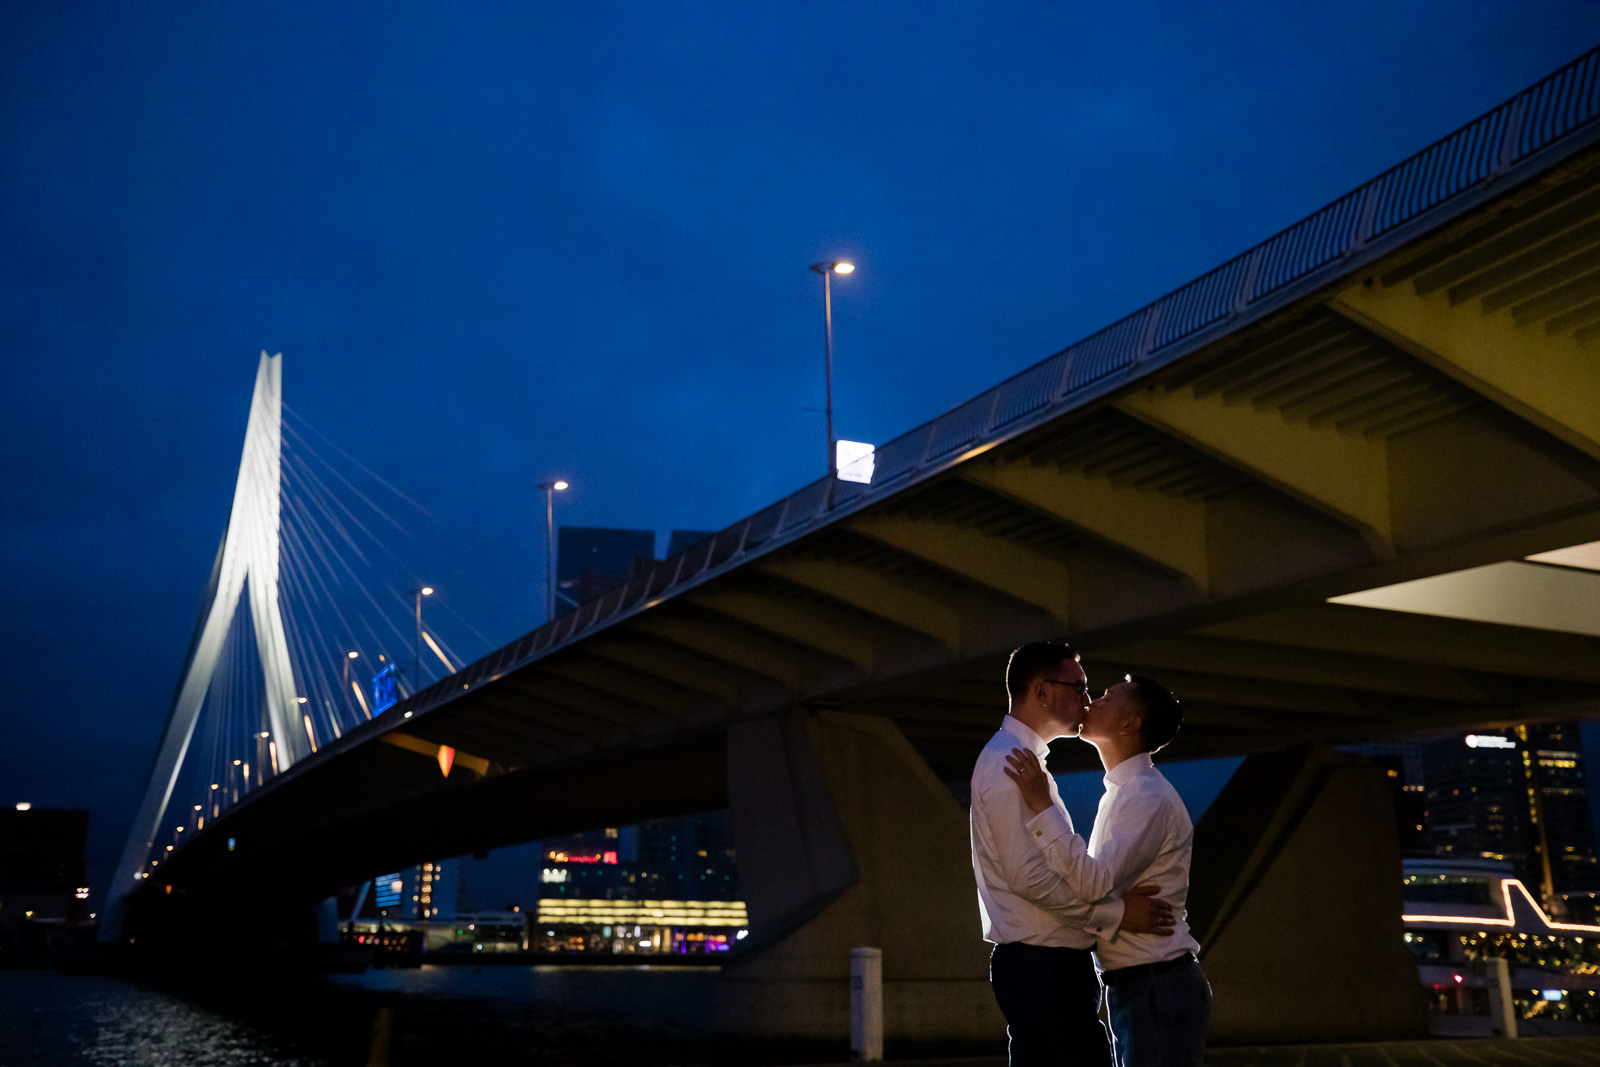 Avond fotoshoot bij Erasmusbrug homohuwelijk door bruidsfotograaf Rotterdam